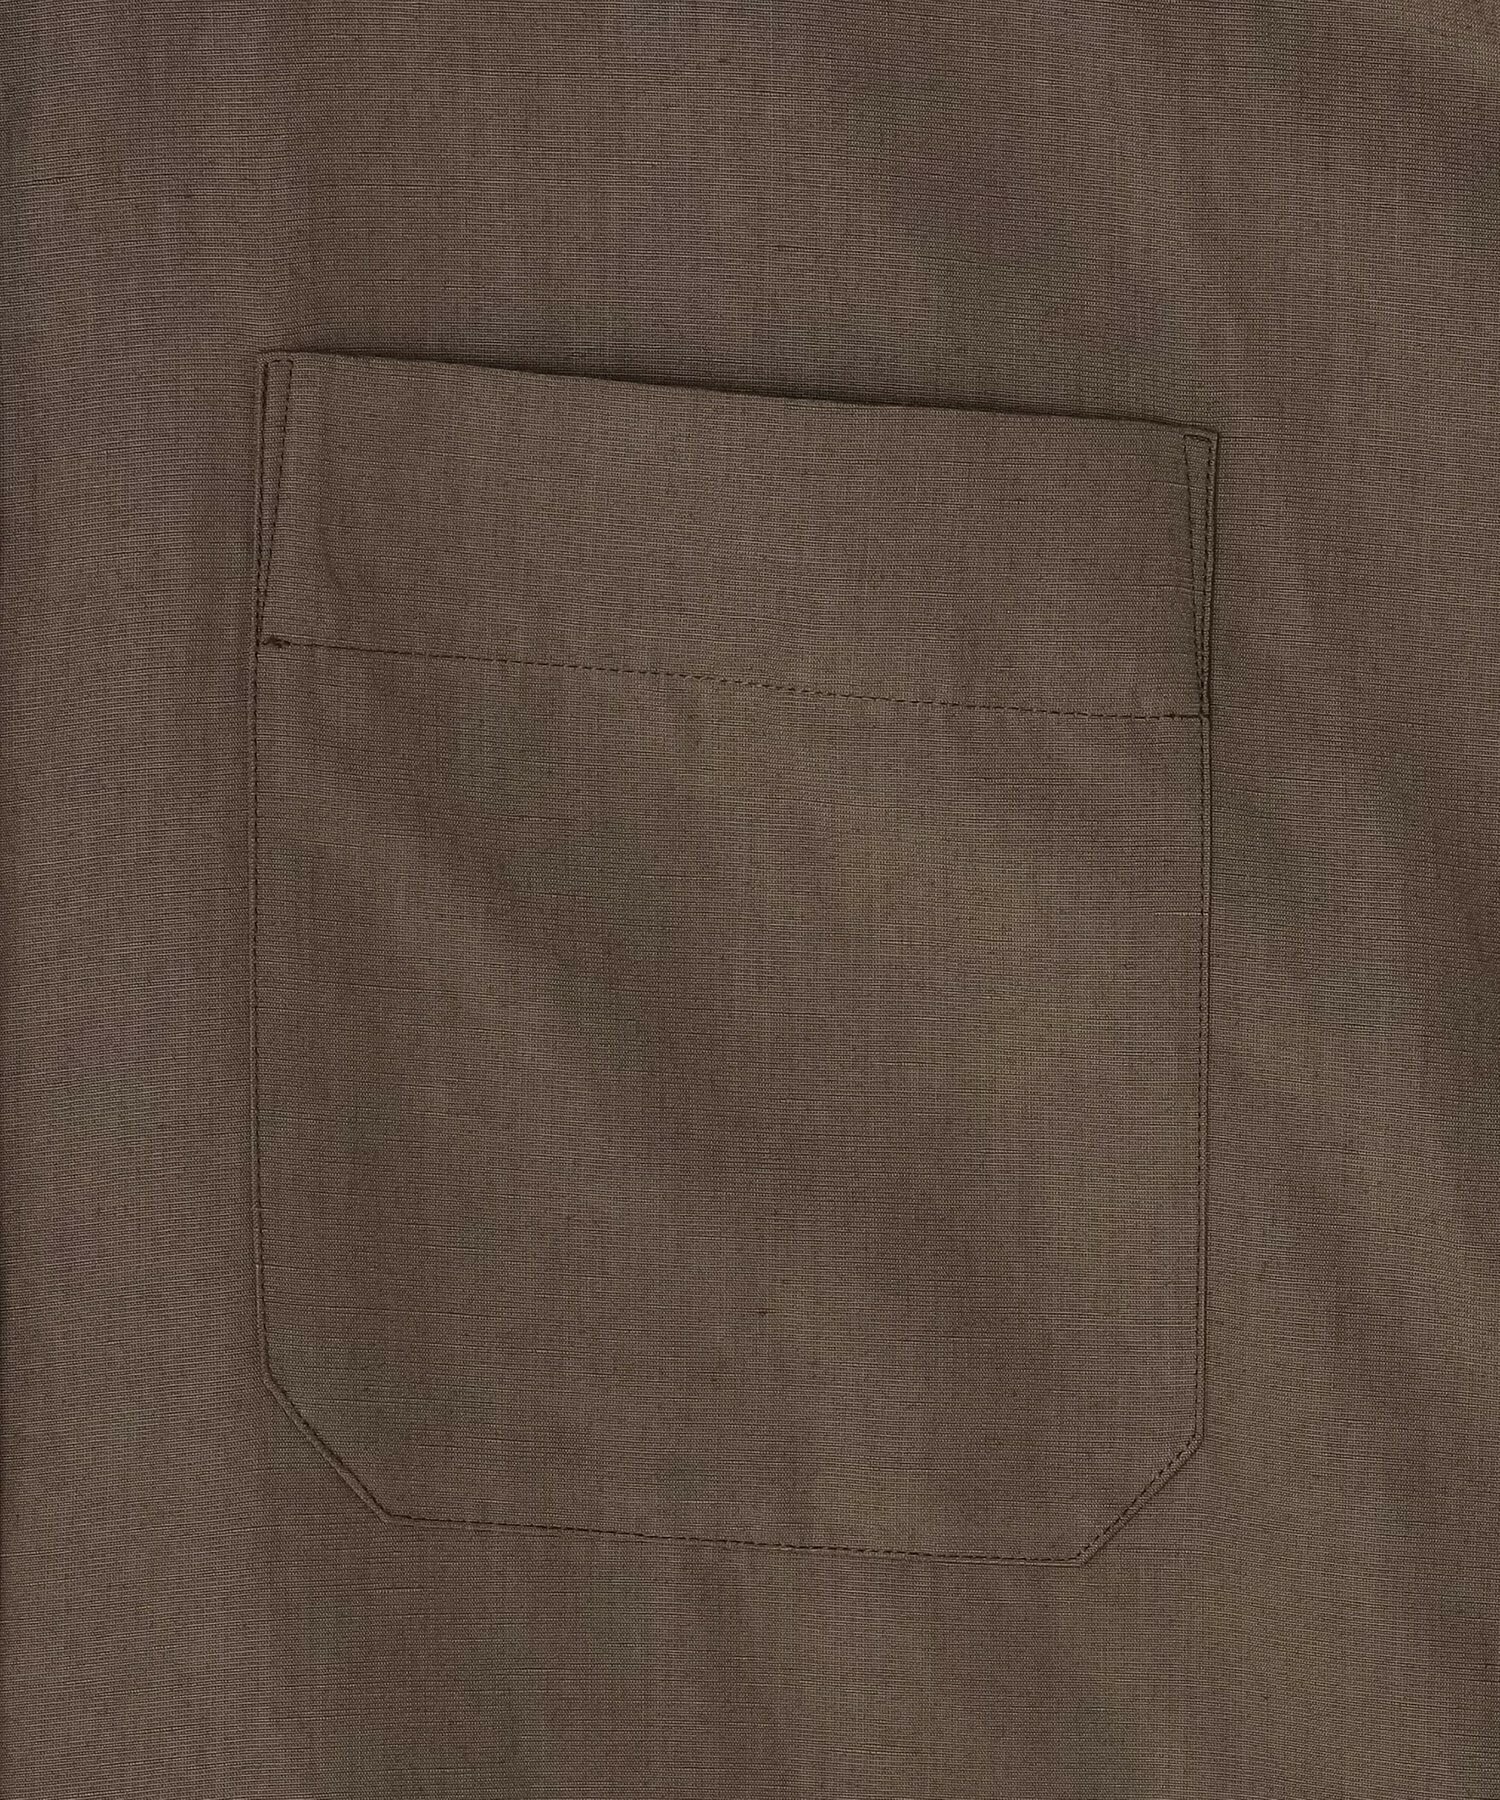 【MOGA】【Lサイズ】ナチュラルタンブラーボリュームシャツ 詳細画像 ブラウン 3